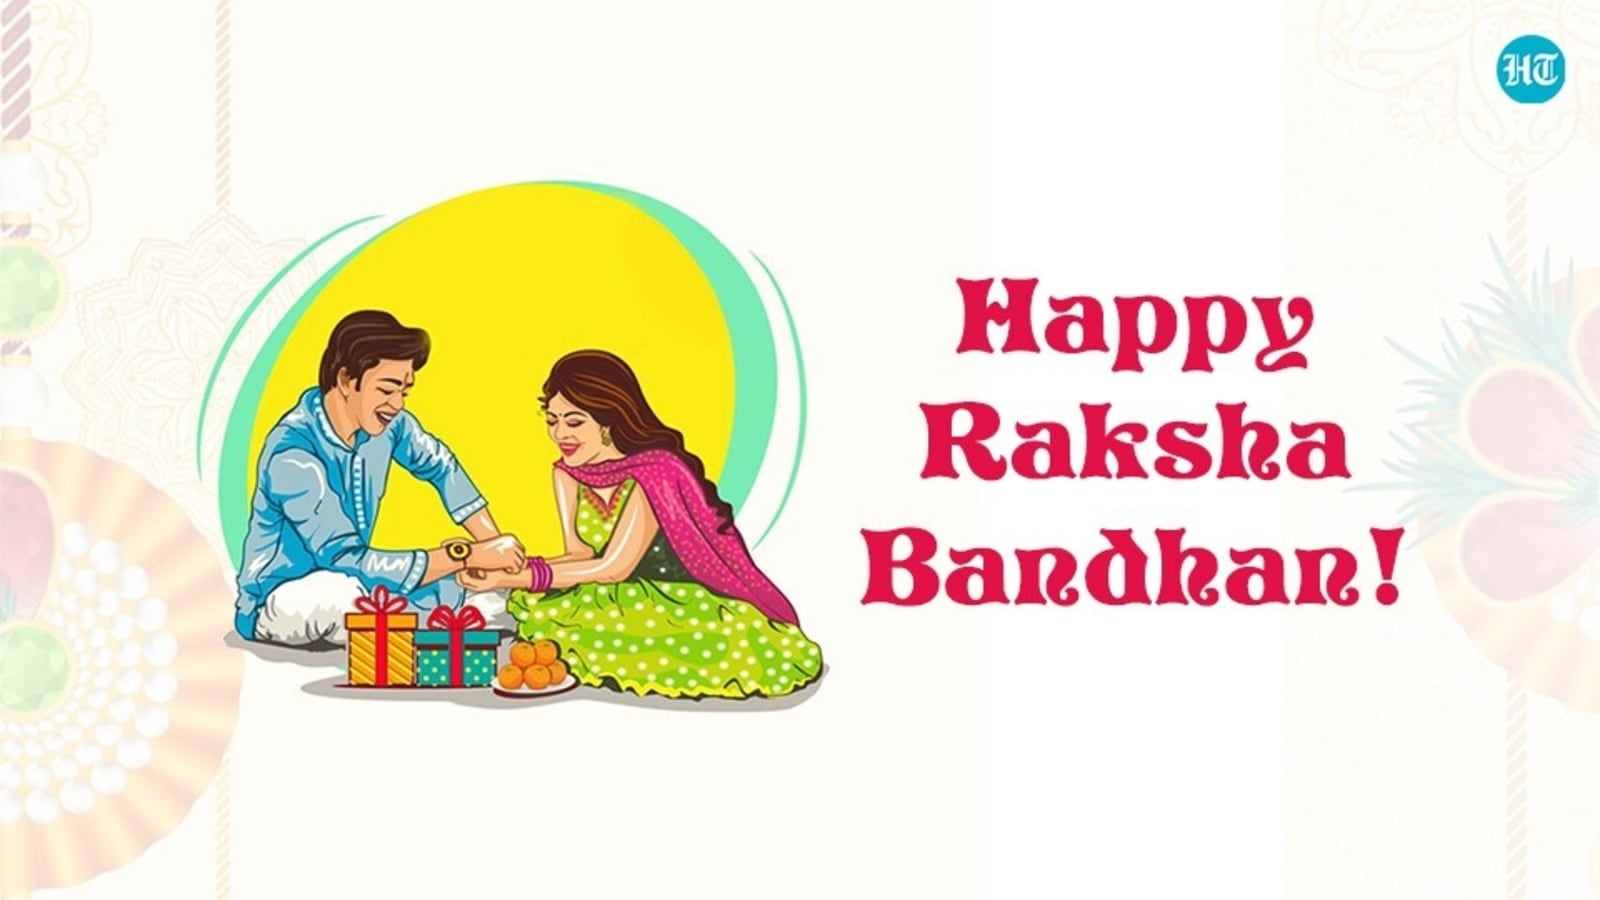 Raksha 2021 happy bandhan Happy Raksha